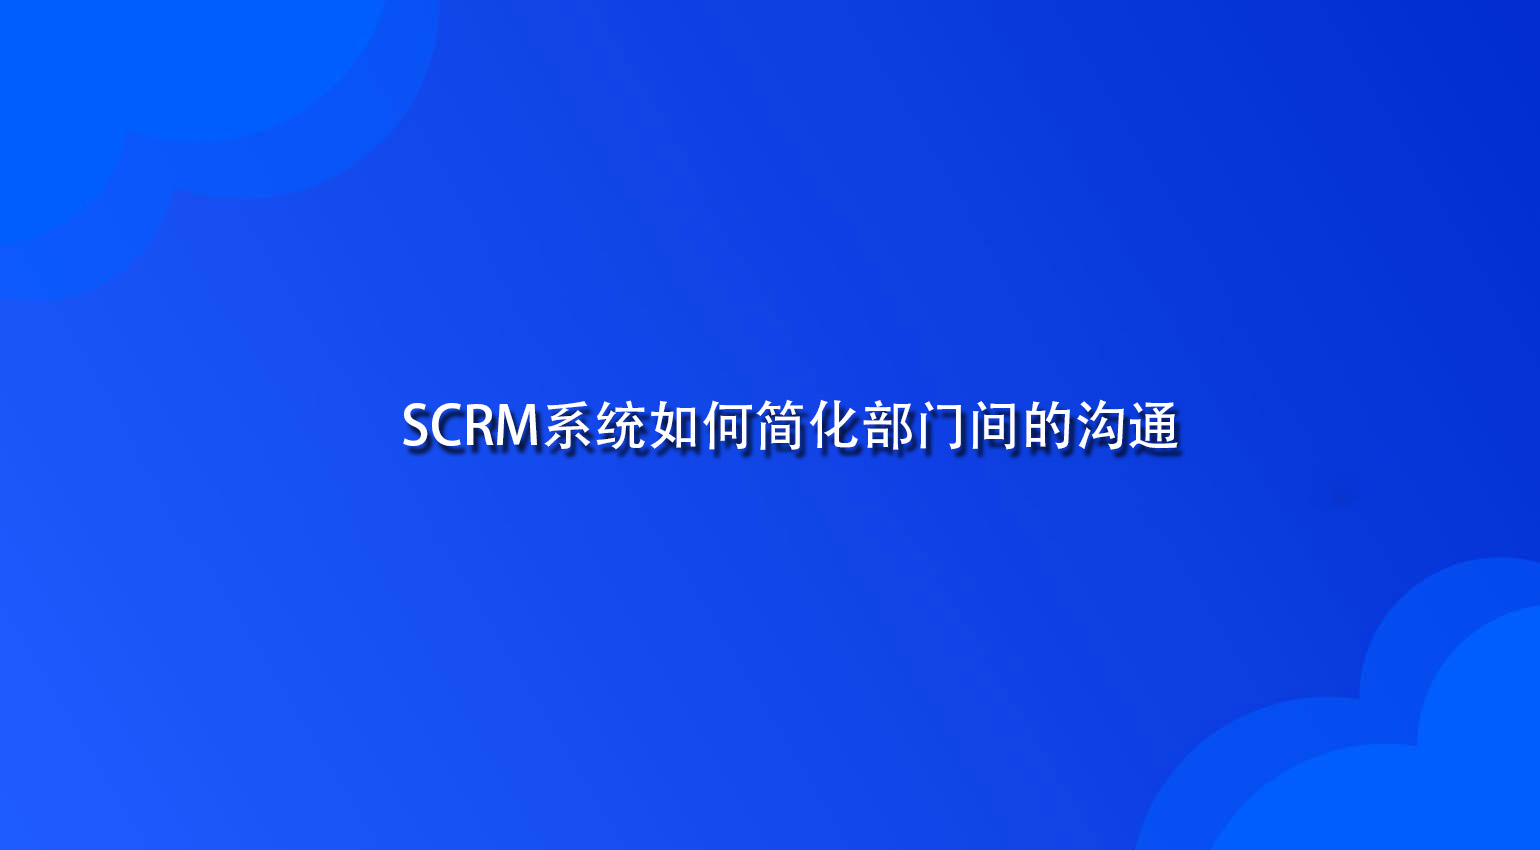 SCRM系统如何简化部门间的沟通